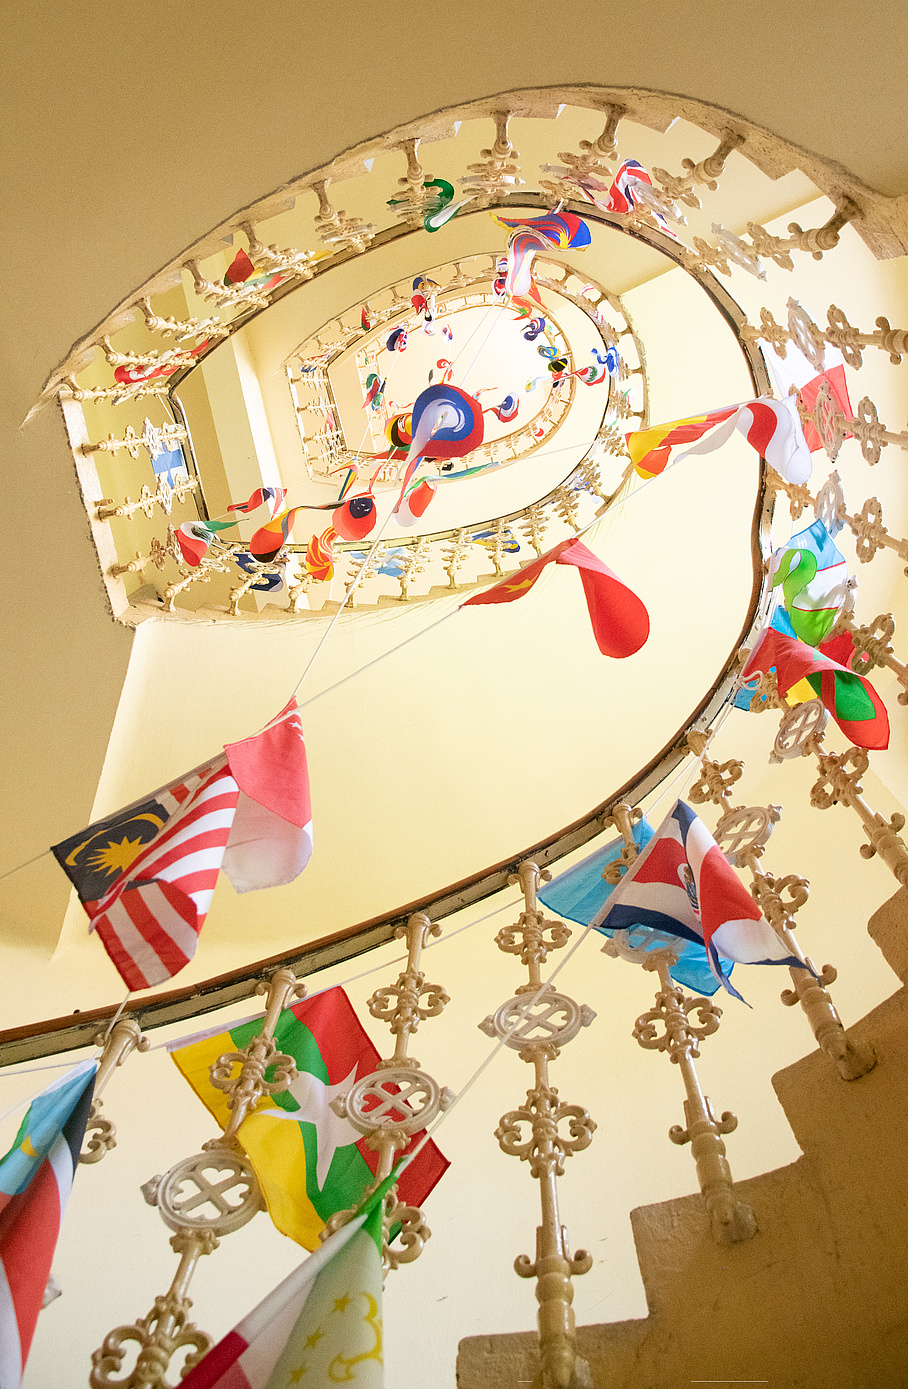 Treppenhaus mit Landesflaggen aus aller Welt